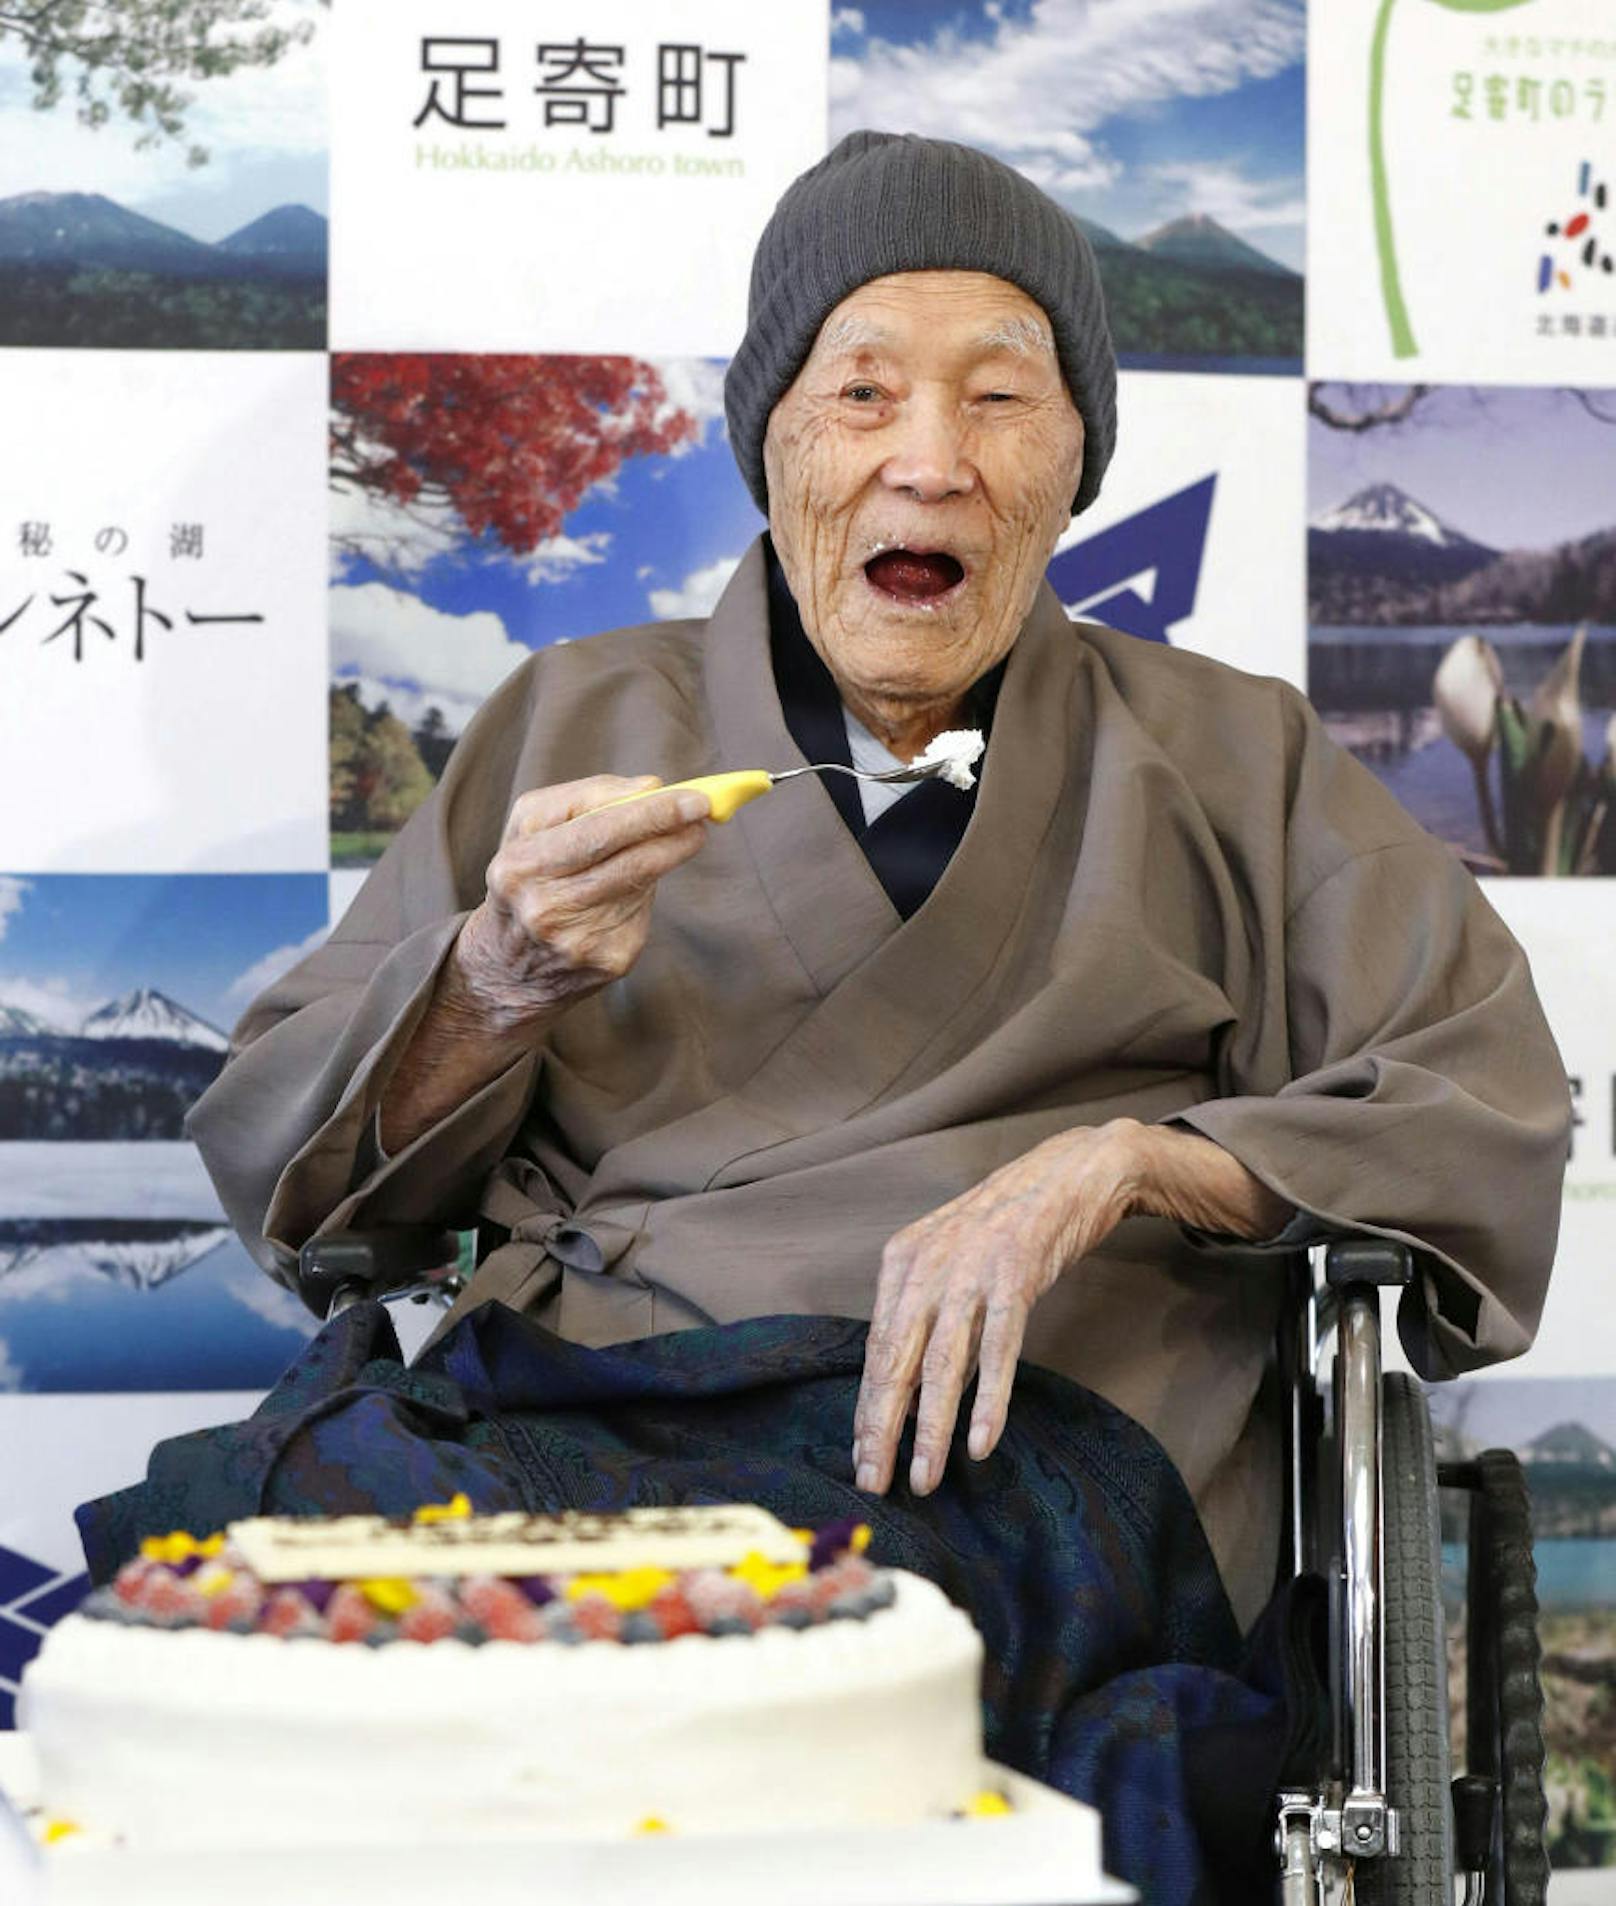 Masazo Nonaka liebt Kuchen, deshalb gab's zur Urkunden-Überreichung ein besonders großes Exemplar. 